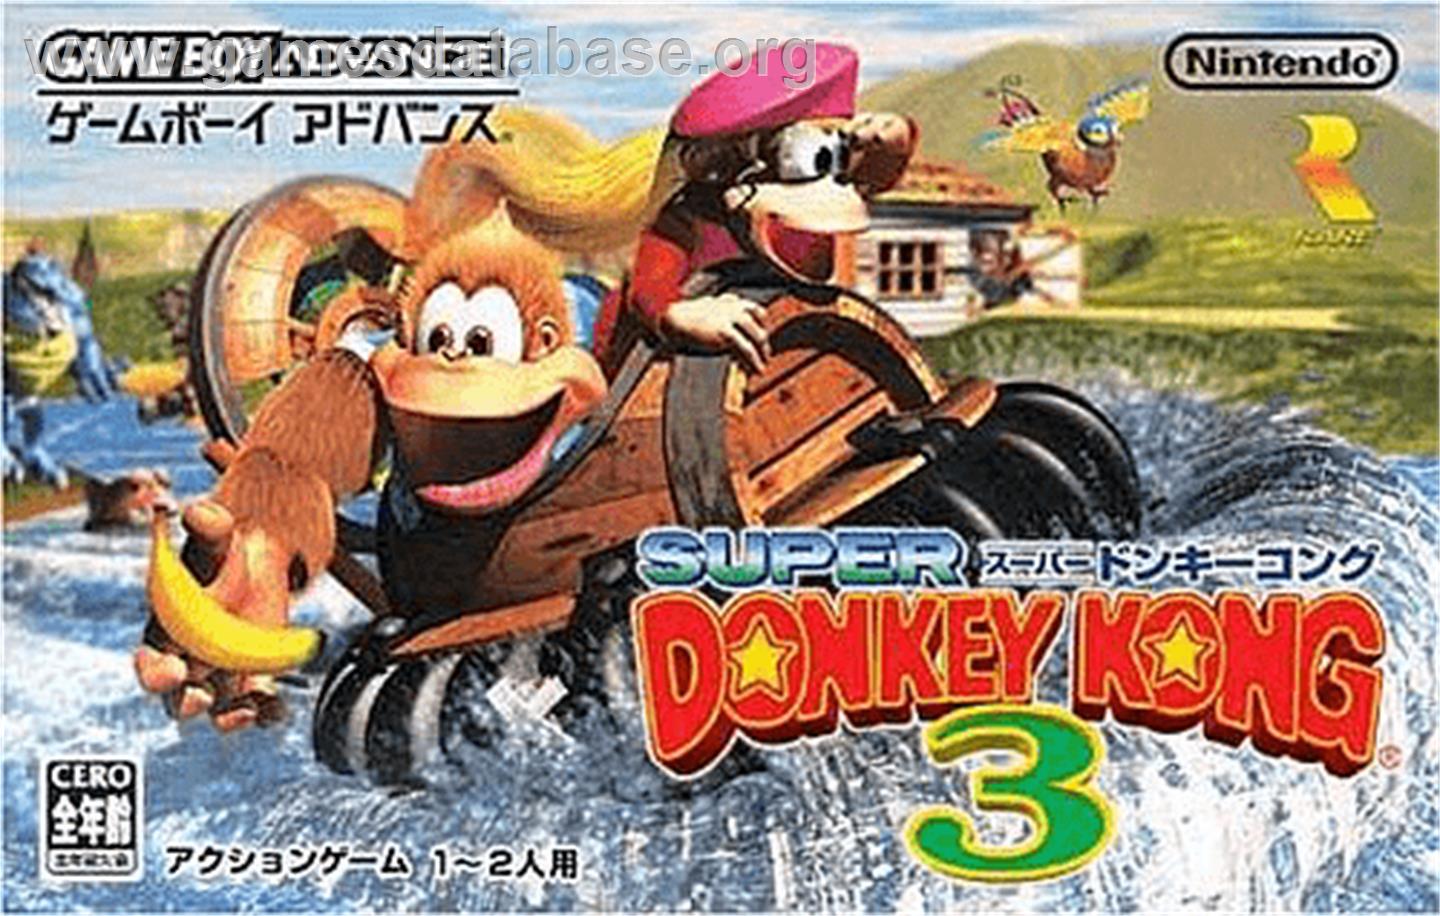 Donkey Kong 3 - Nintendo Game Boy Advance - Artwork - Box